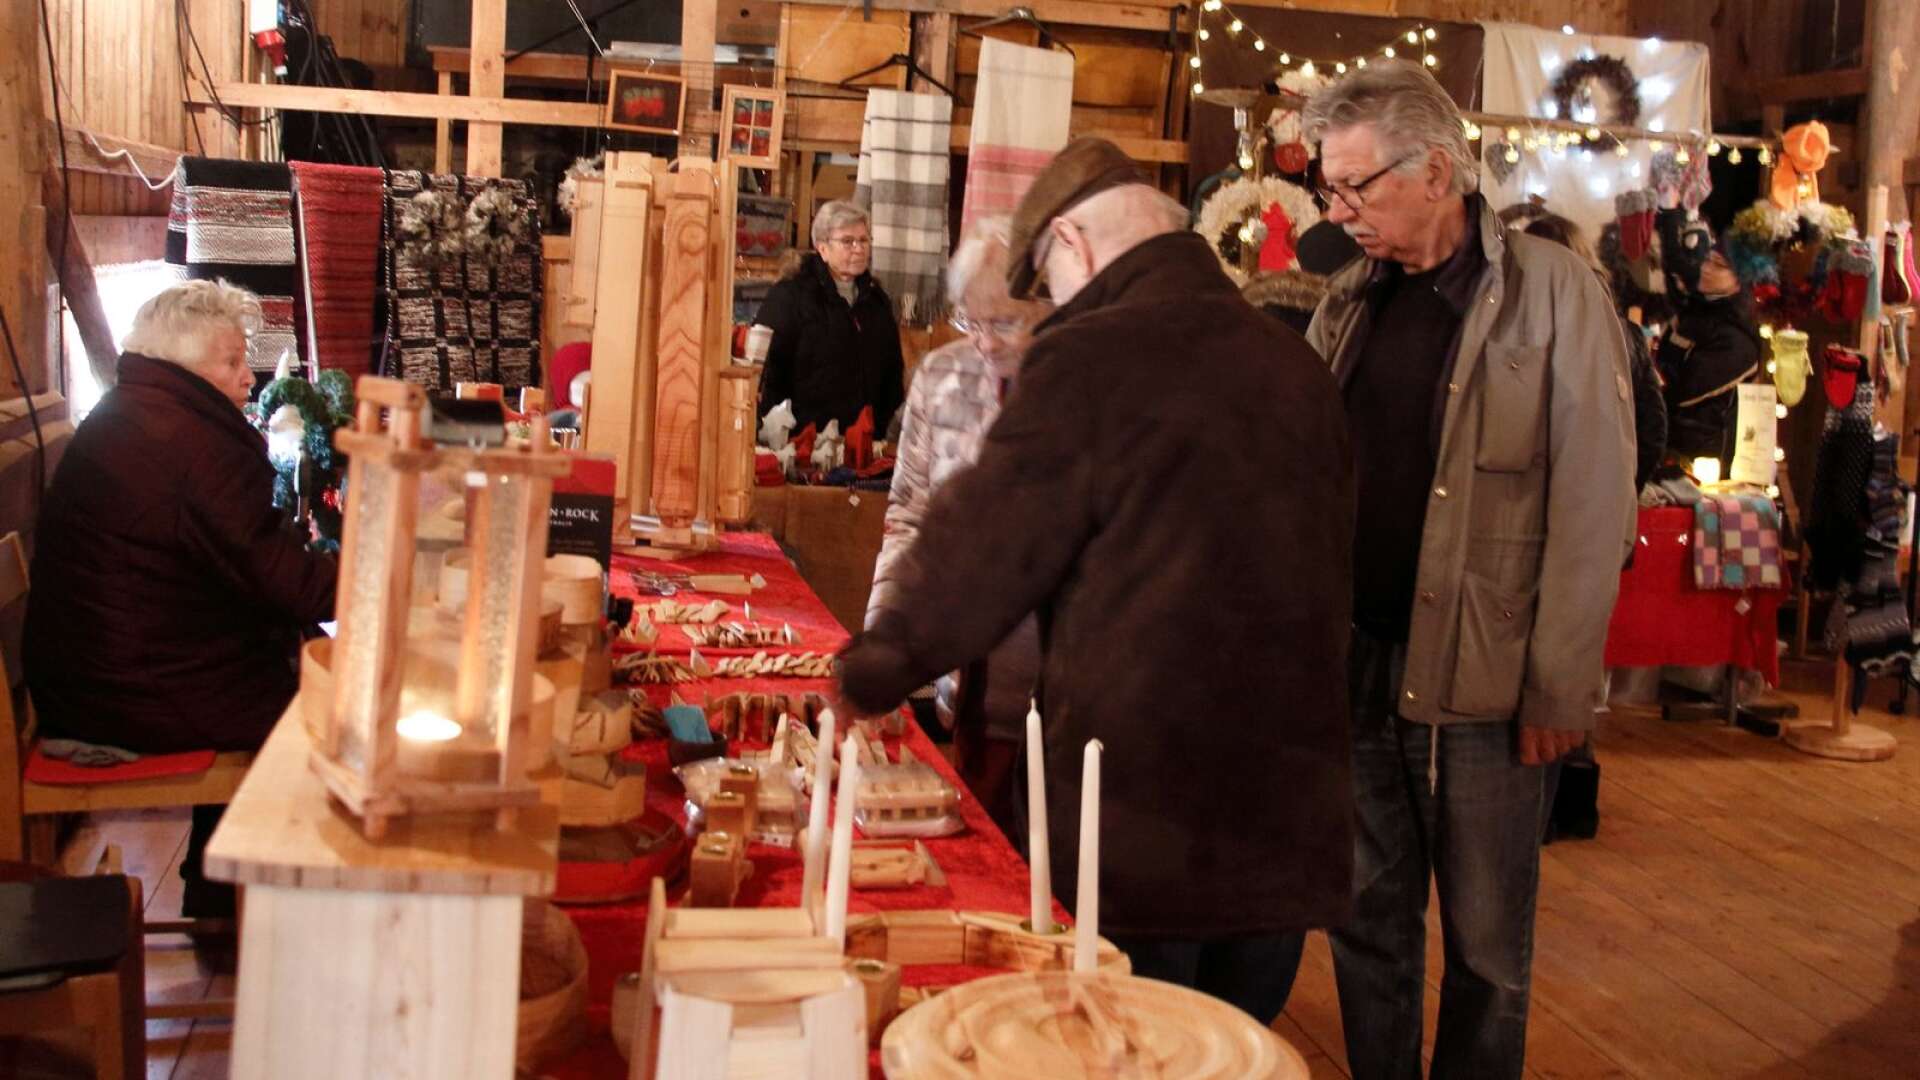 Kommande helg är det julmarknad i Knutsbol. Här en bild från när det senast arrangerades, i november 2018. 